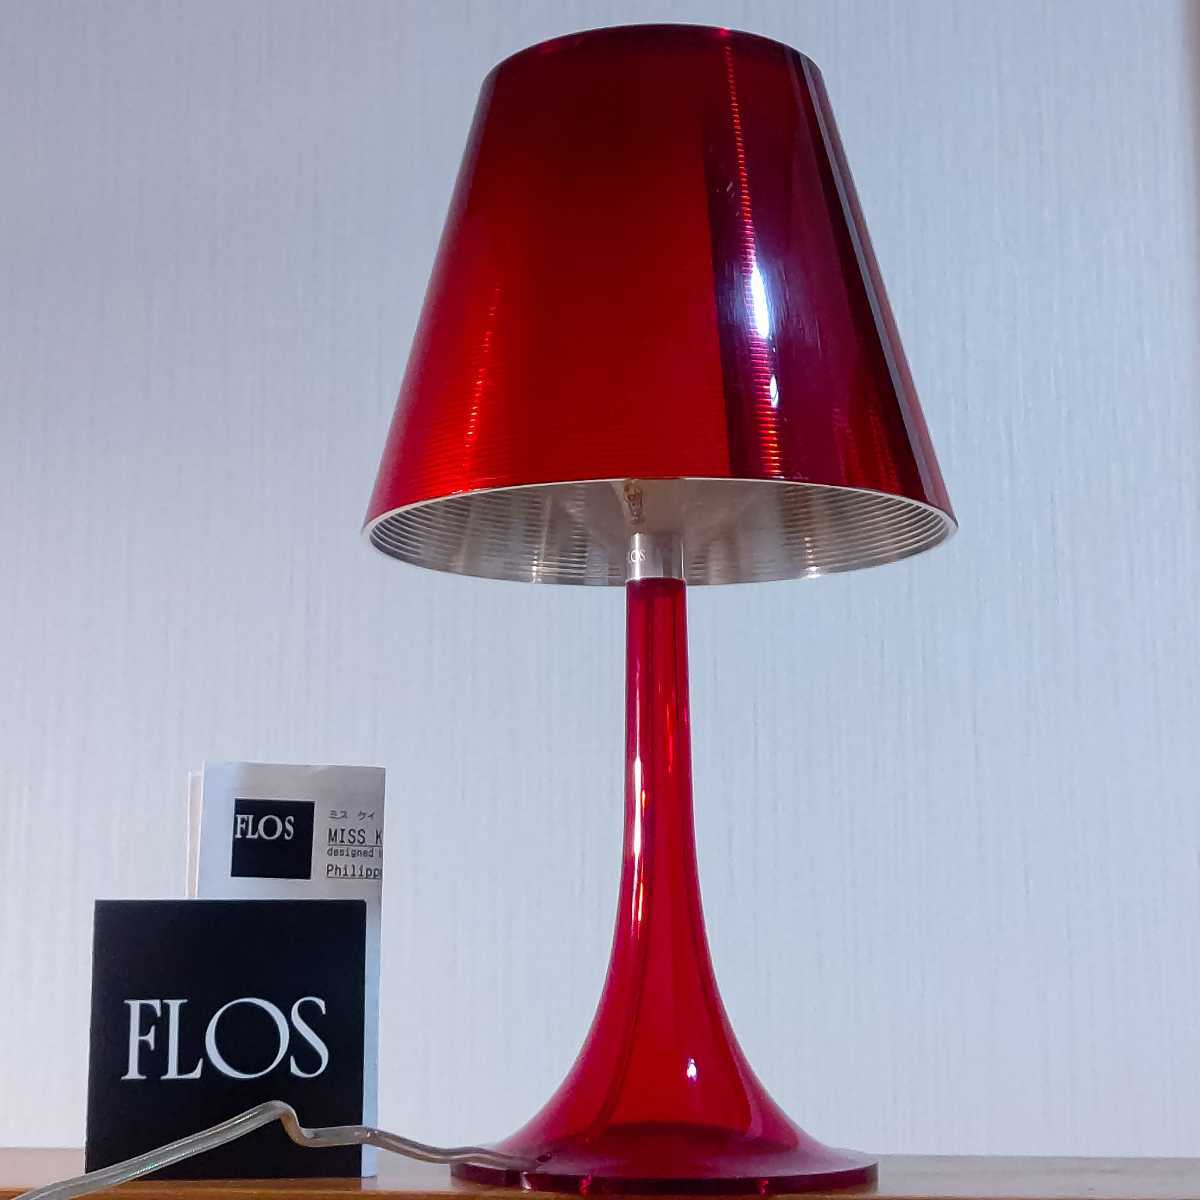 イタリア製 FLOS MISS K フロス ミスK テーブルランプ 照明 スタンド